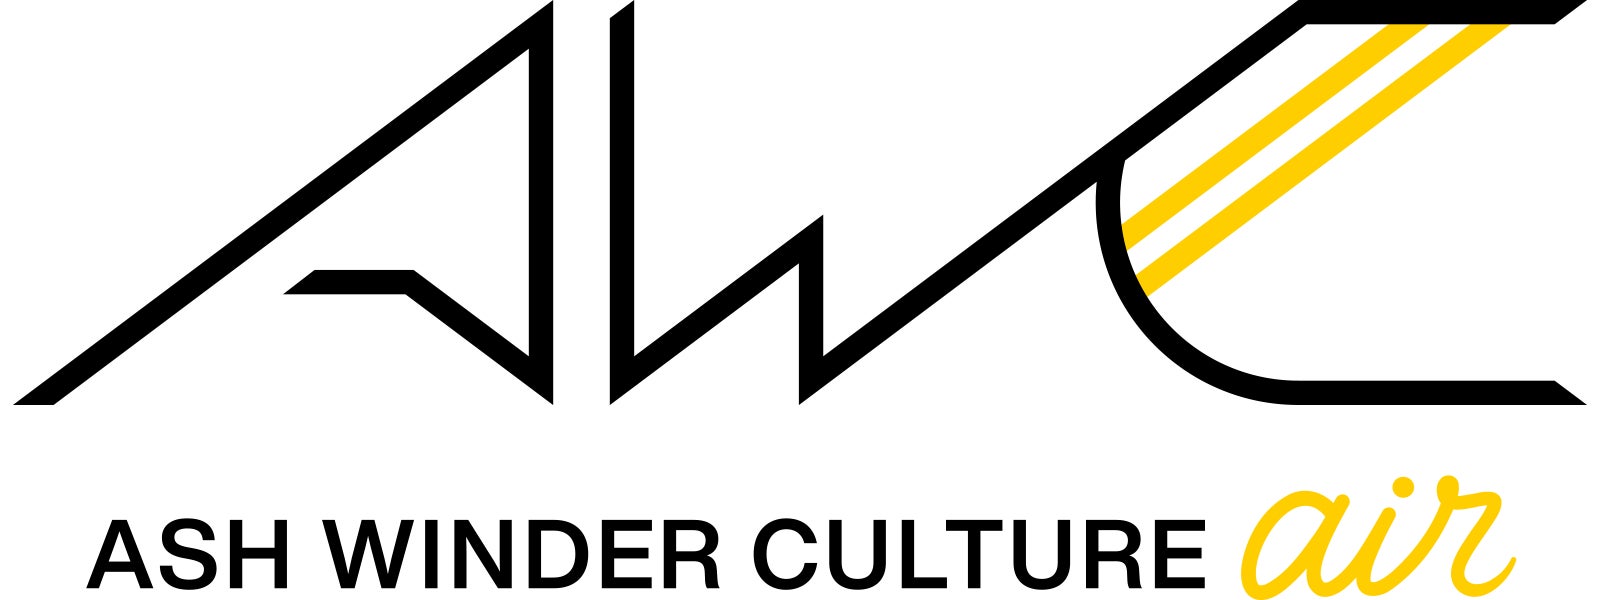 「ASH WINDER CULTURE」を展開する株式会社ASH WINDERが、eスポーツキャスター「OooDa」と業務提携契約を締結のサブ画像4